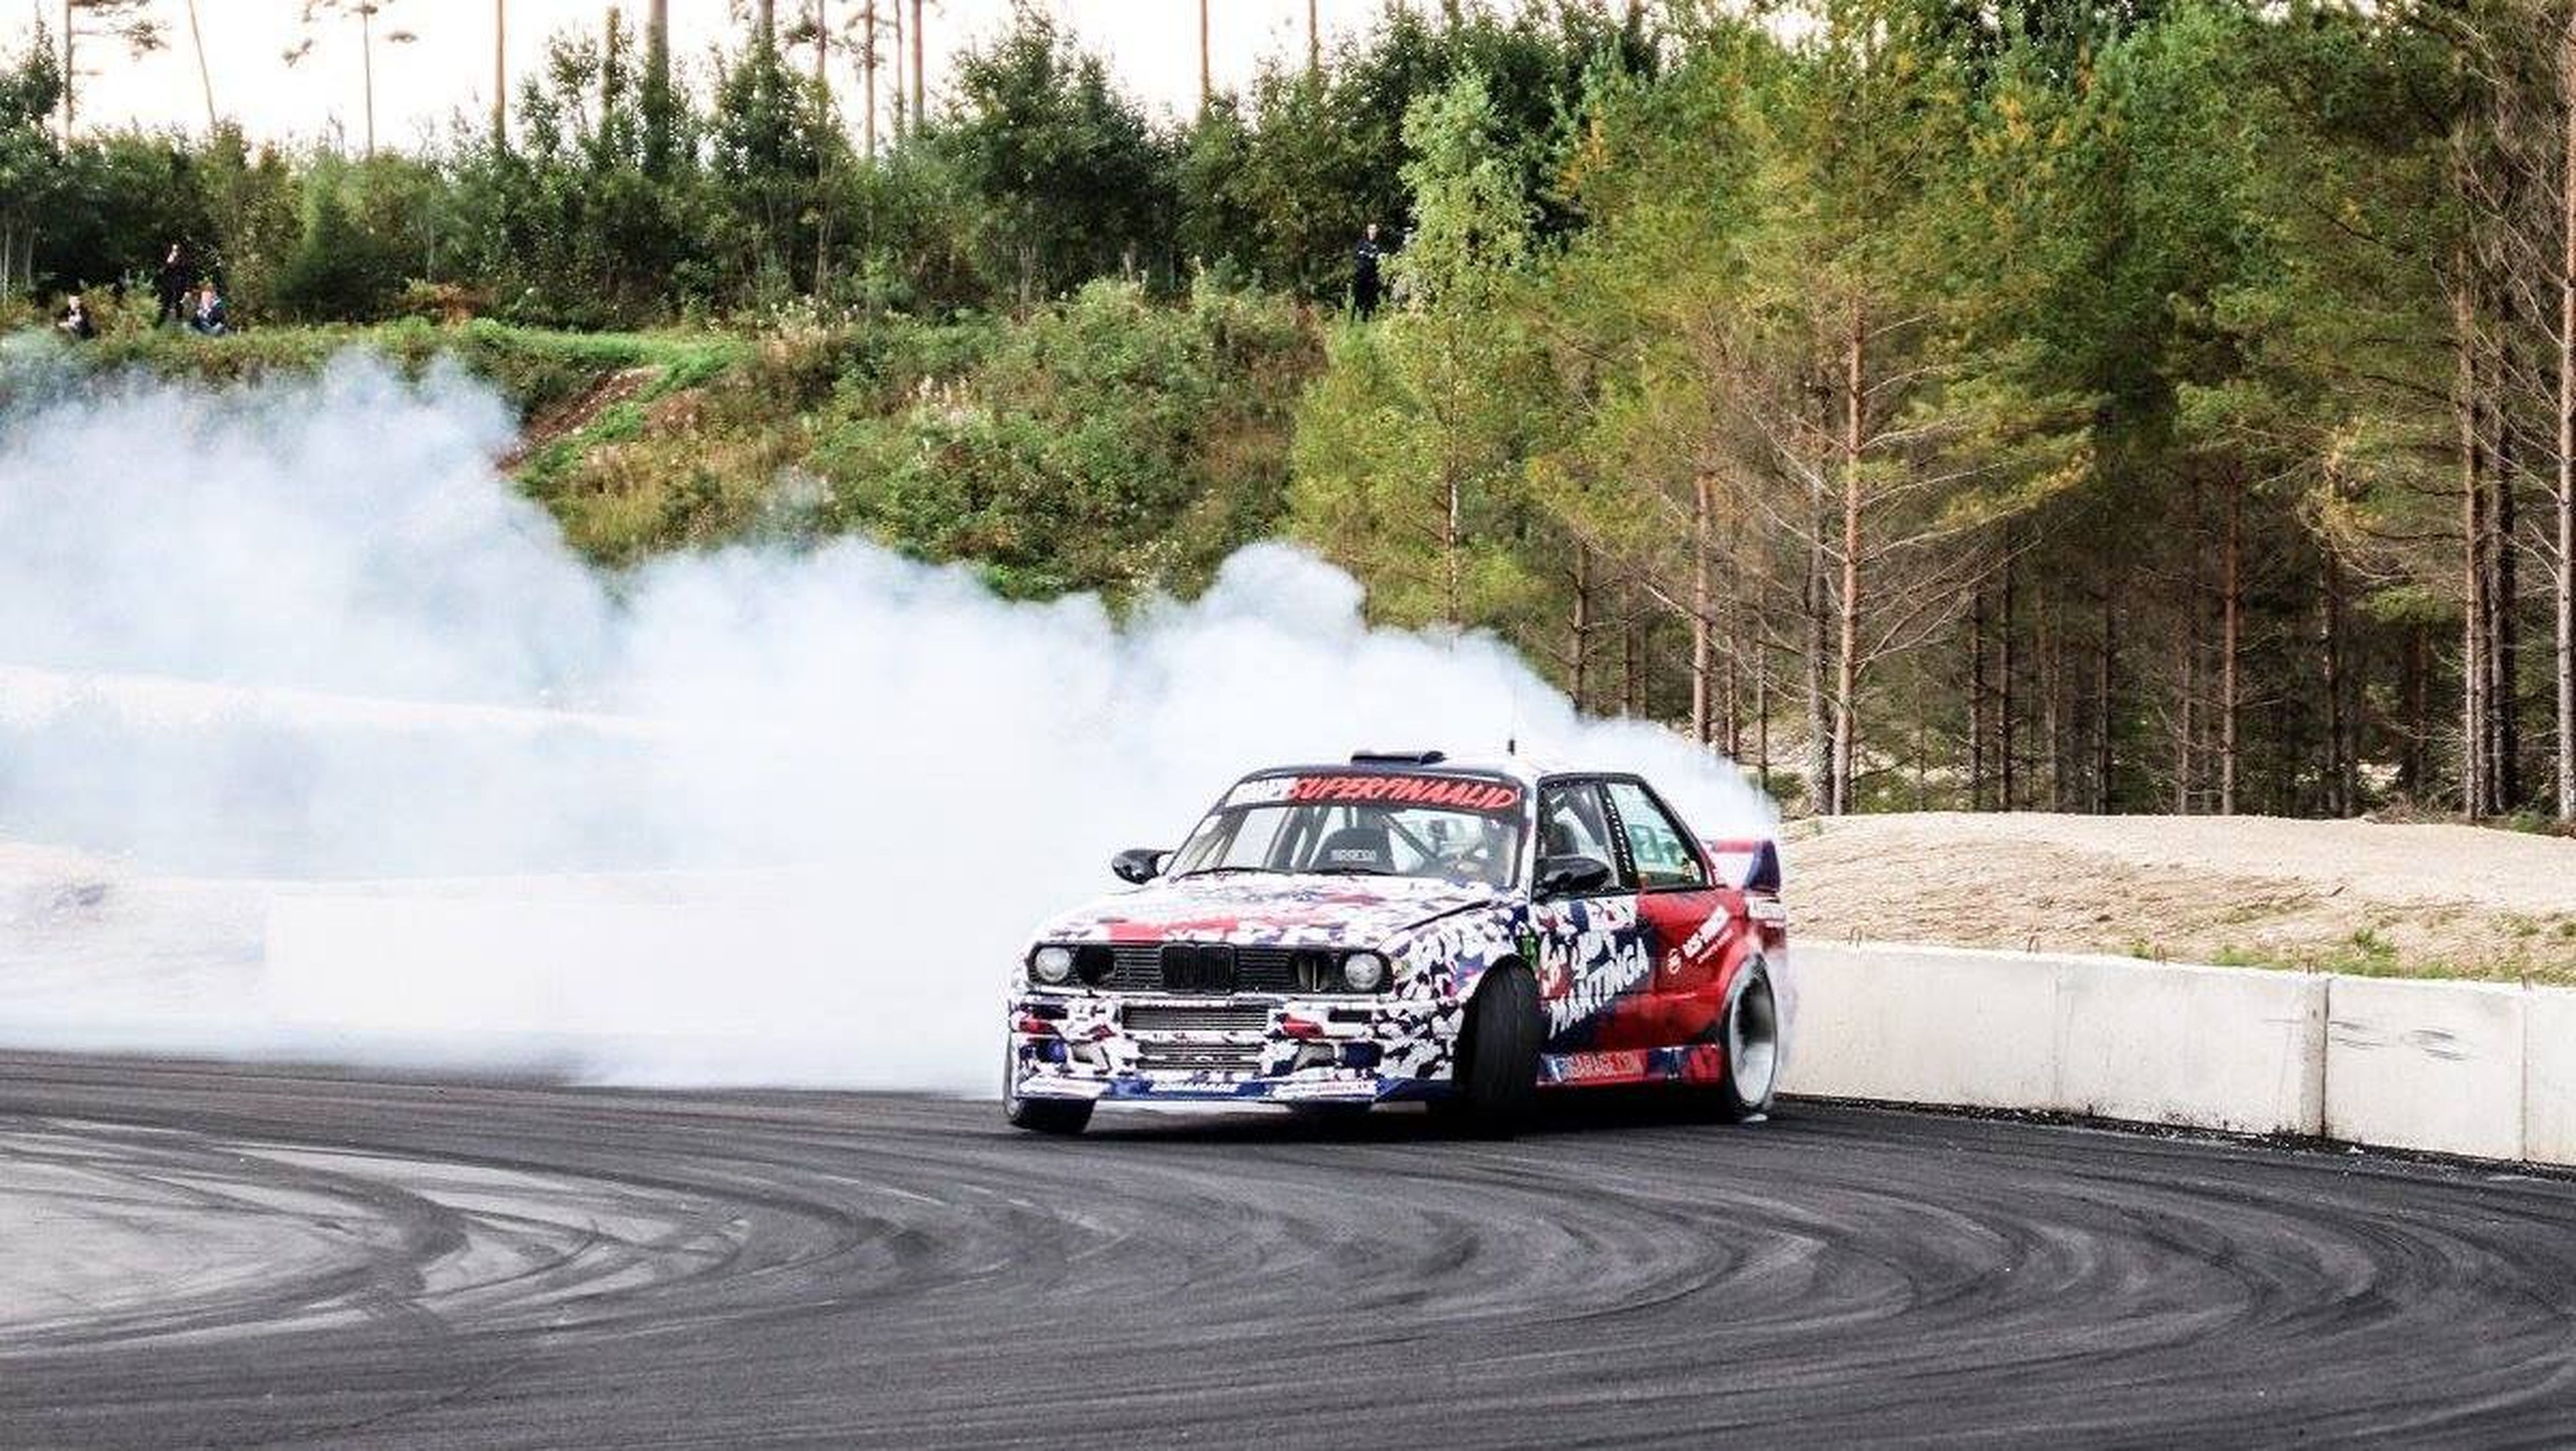 Circuito drift más loco del mundo (Estonia)